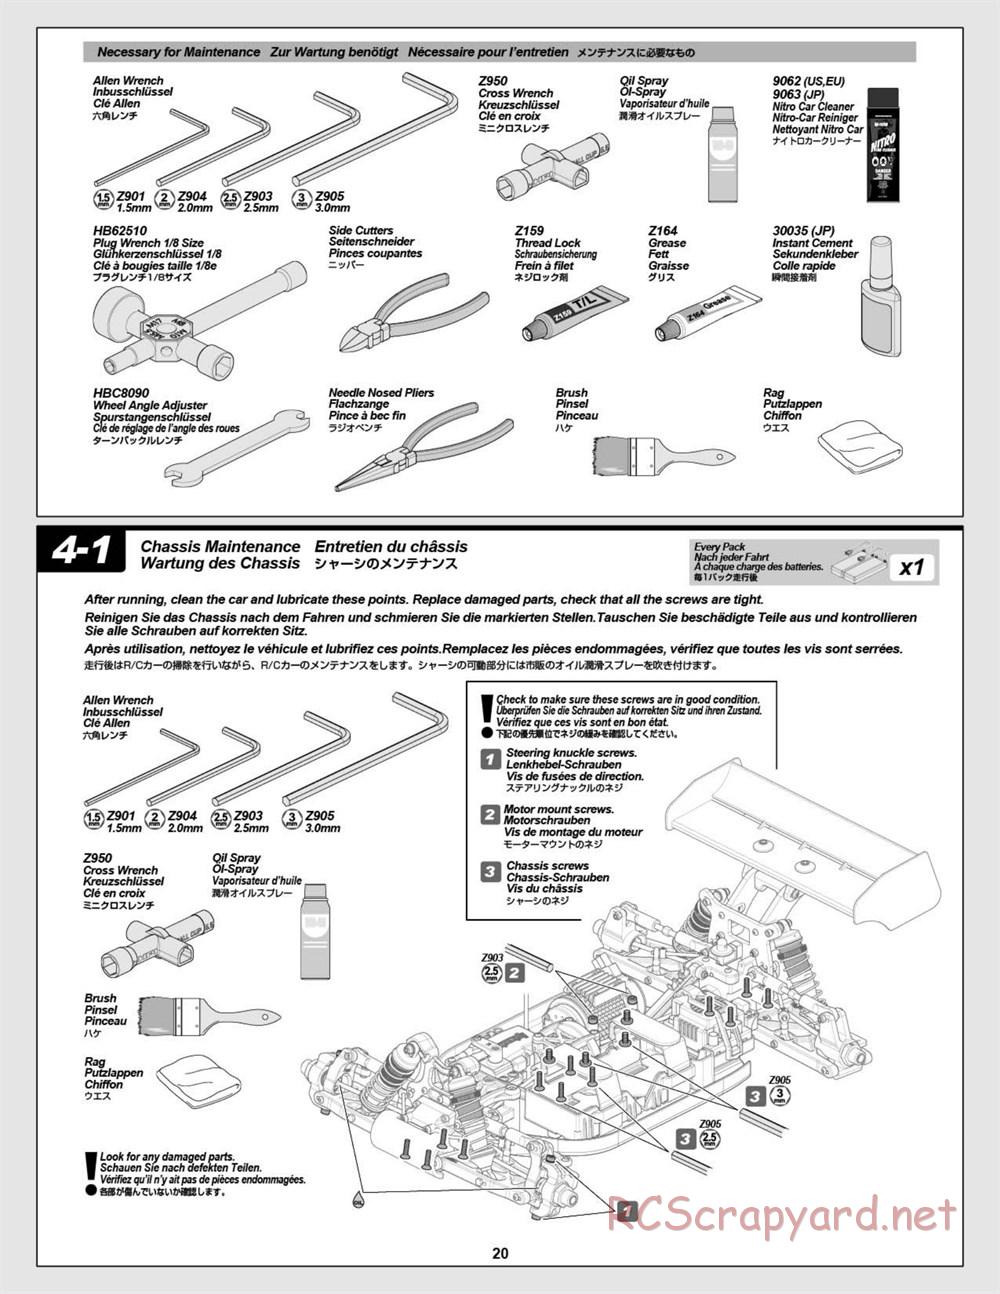 HPI - Vorza Flux HP - Manual - Page 20